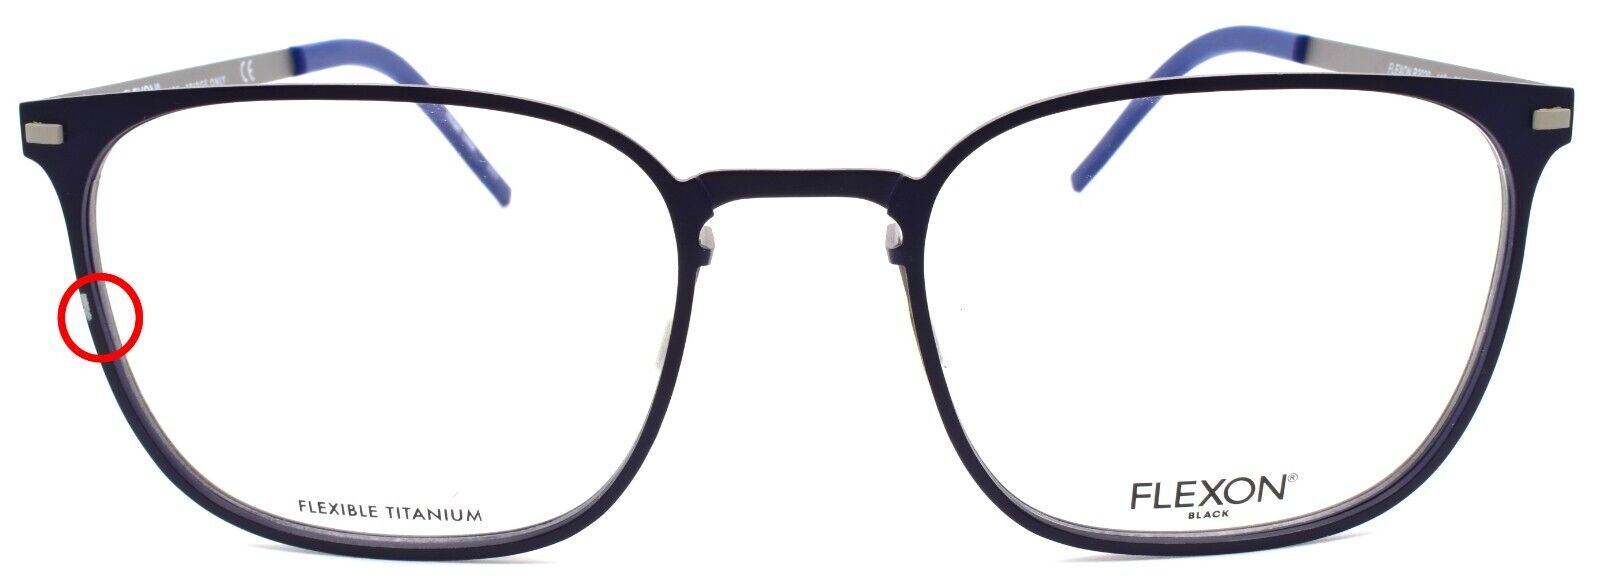 3-Flexon B2029 412 Men's Eyeglasses Navy 53-20-145 Flexible Titanium-883900204644-IKSpecs